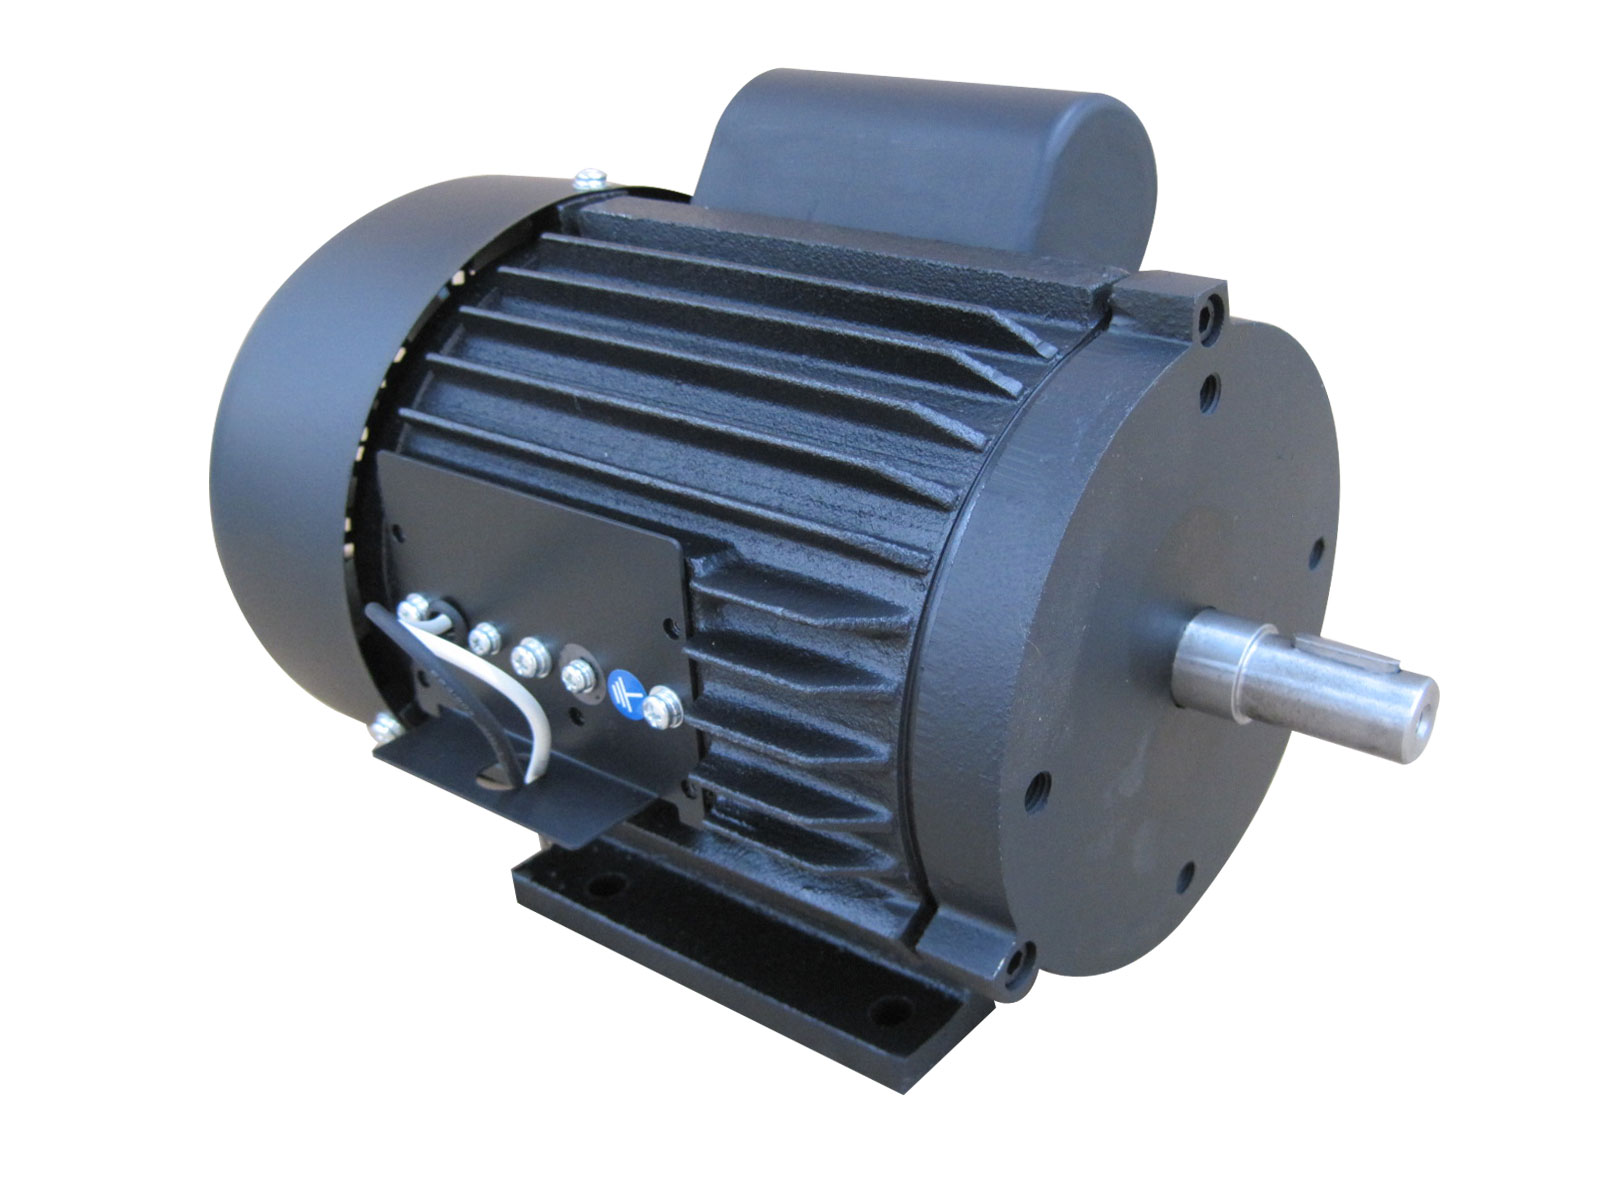 15 KW Industrial Ventilation Fan Motor